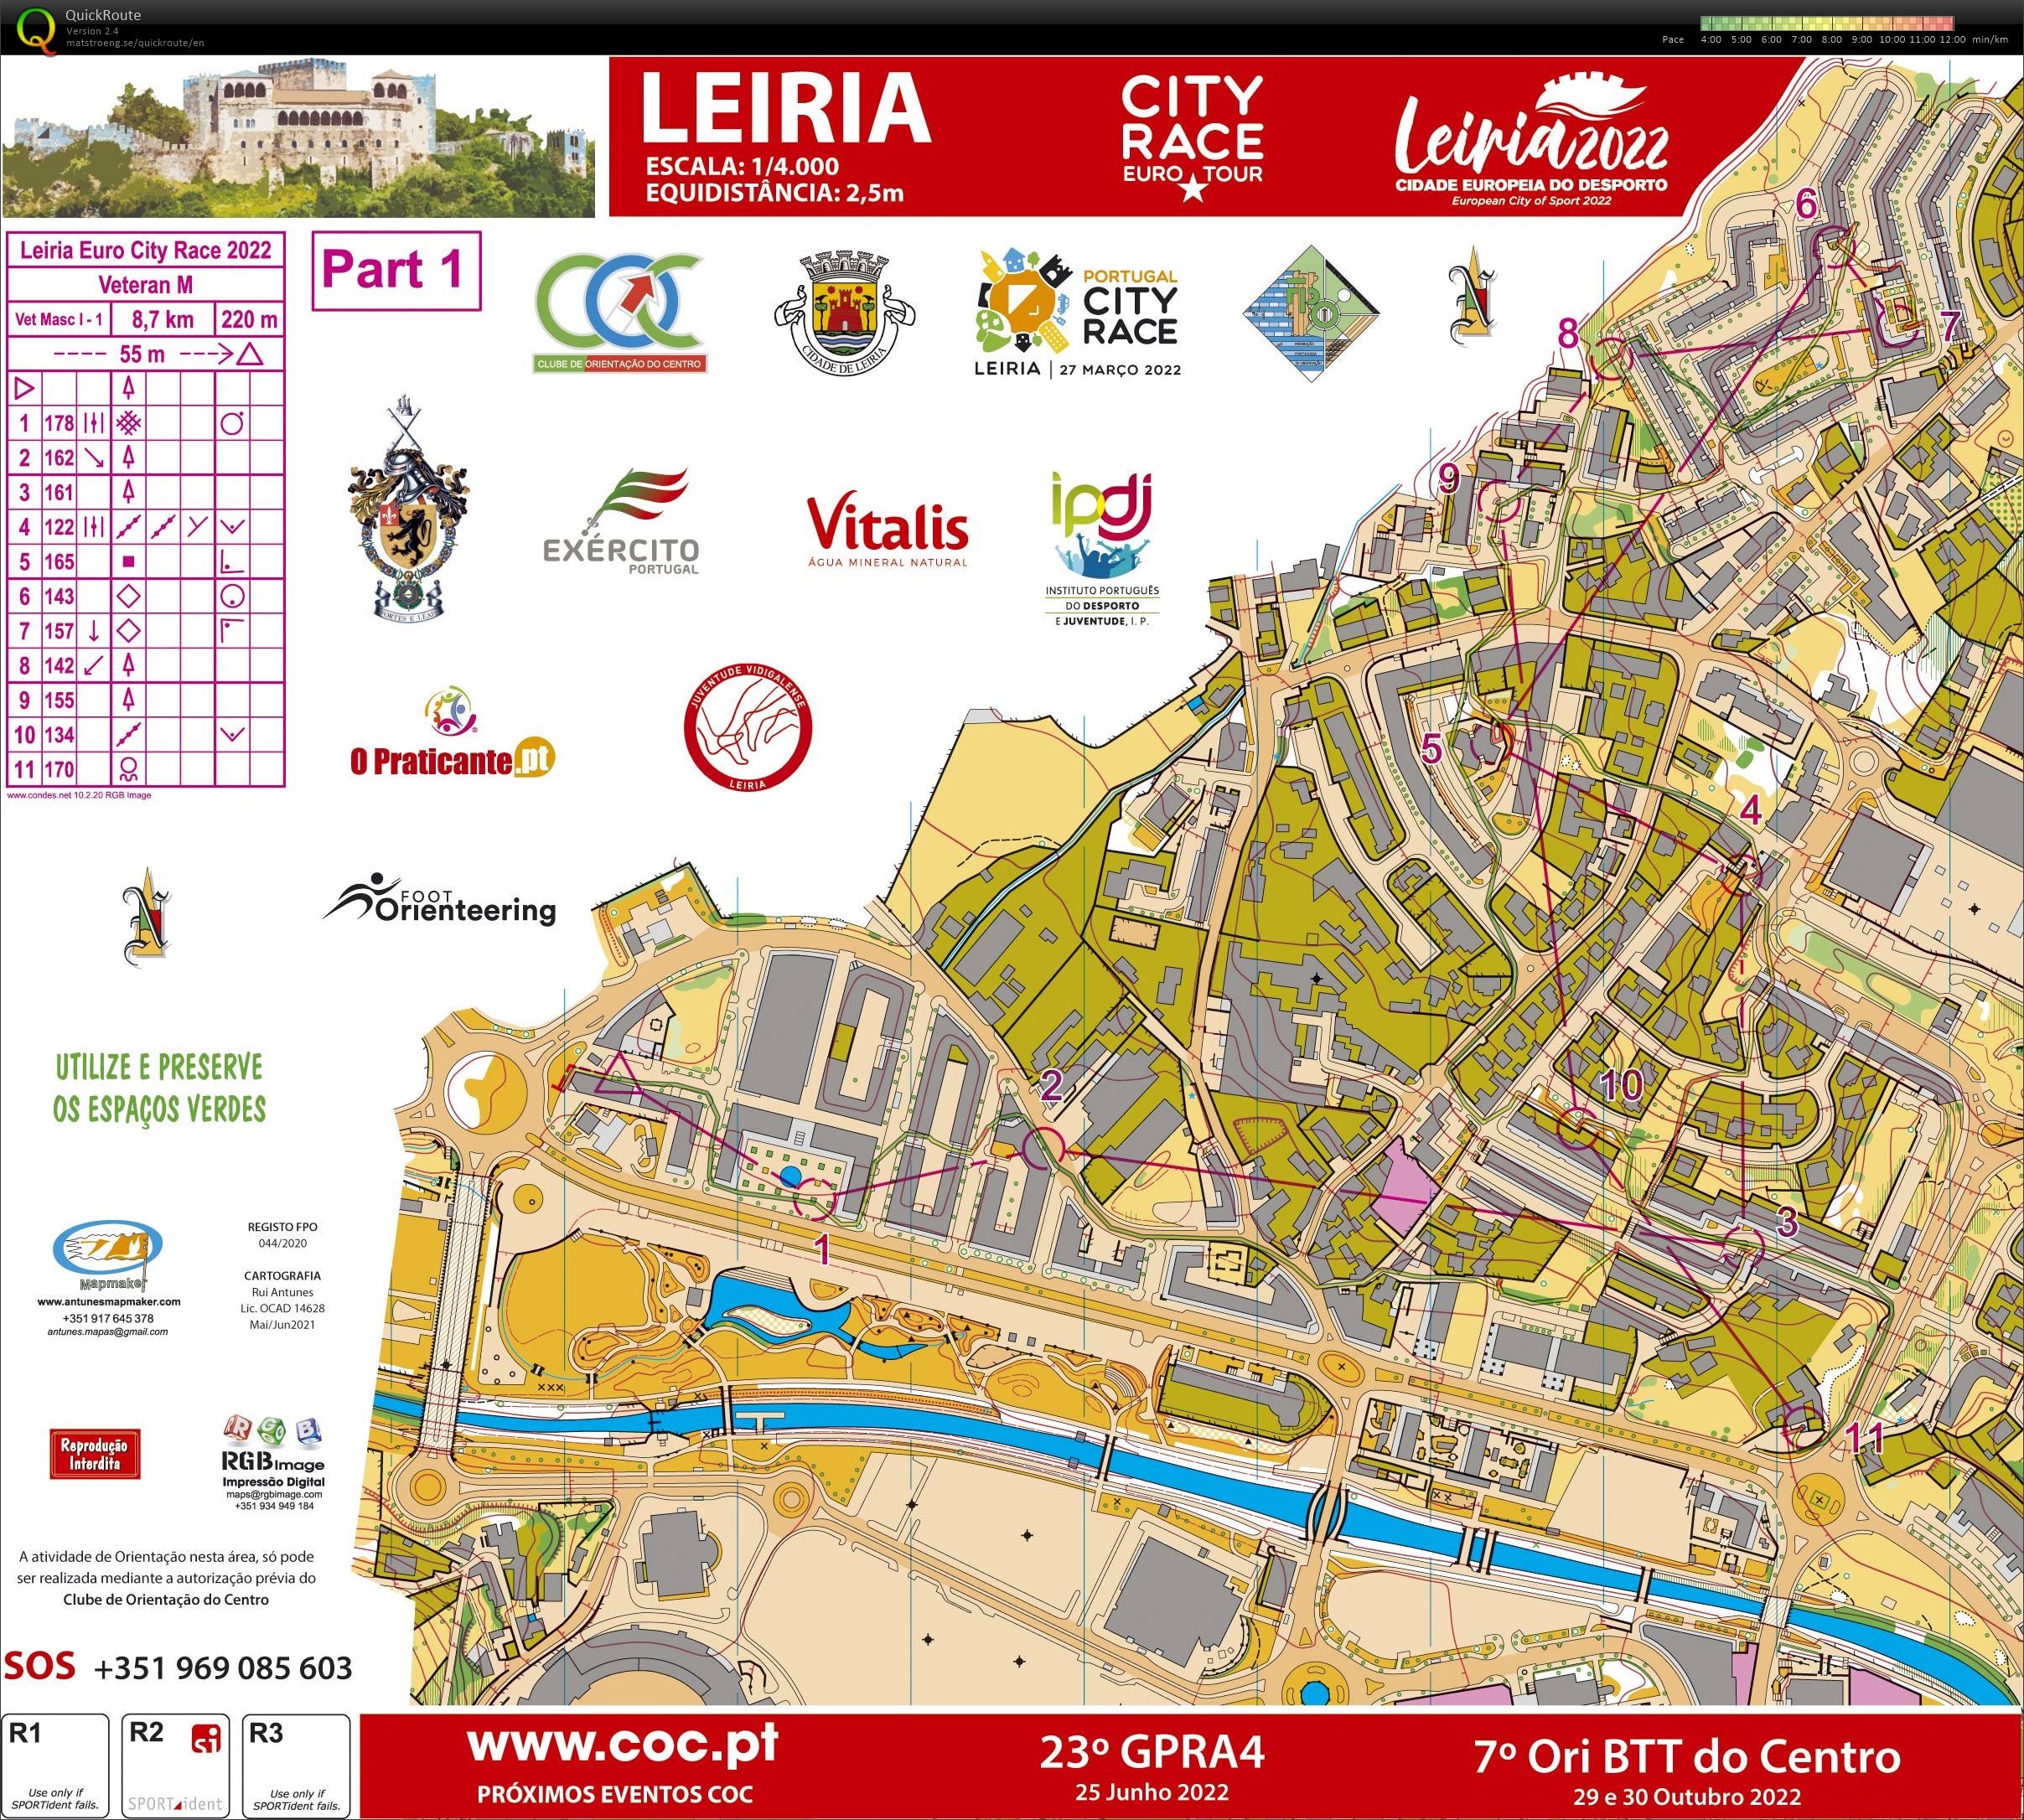 Leiria City Race Euro Tour 2022 (Part1) (27-03-2022)